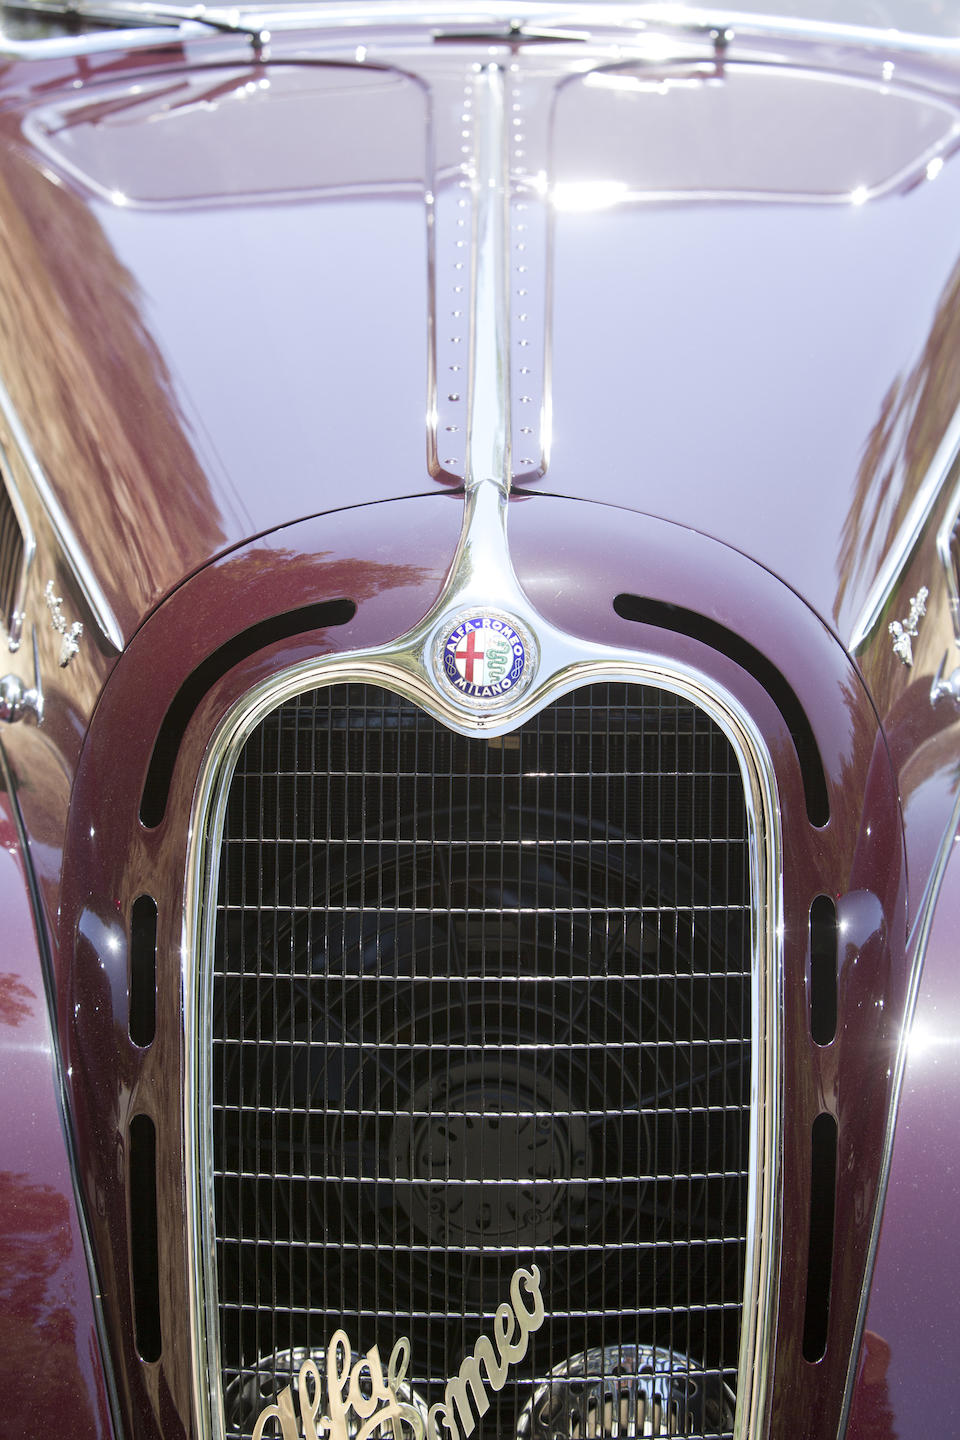 Expos&#233;e au Concours d'&#201;l&#233;gance de Pebble Beach ,Alfa Romeo 6C 2300B berlinette 1937